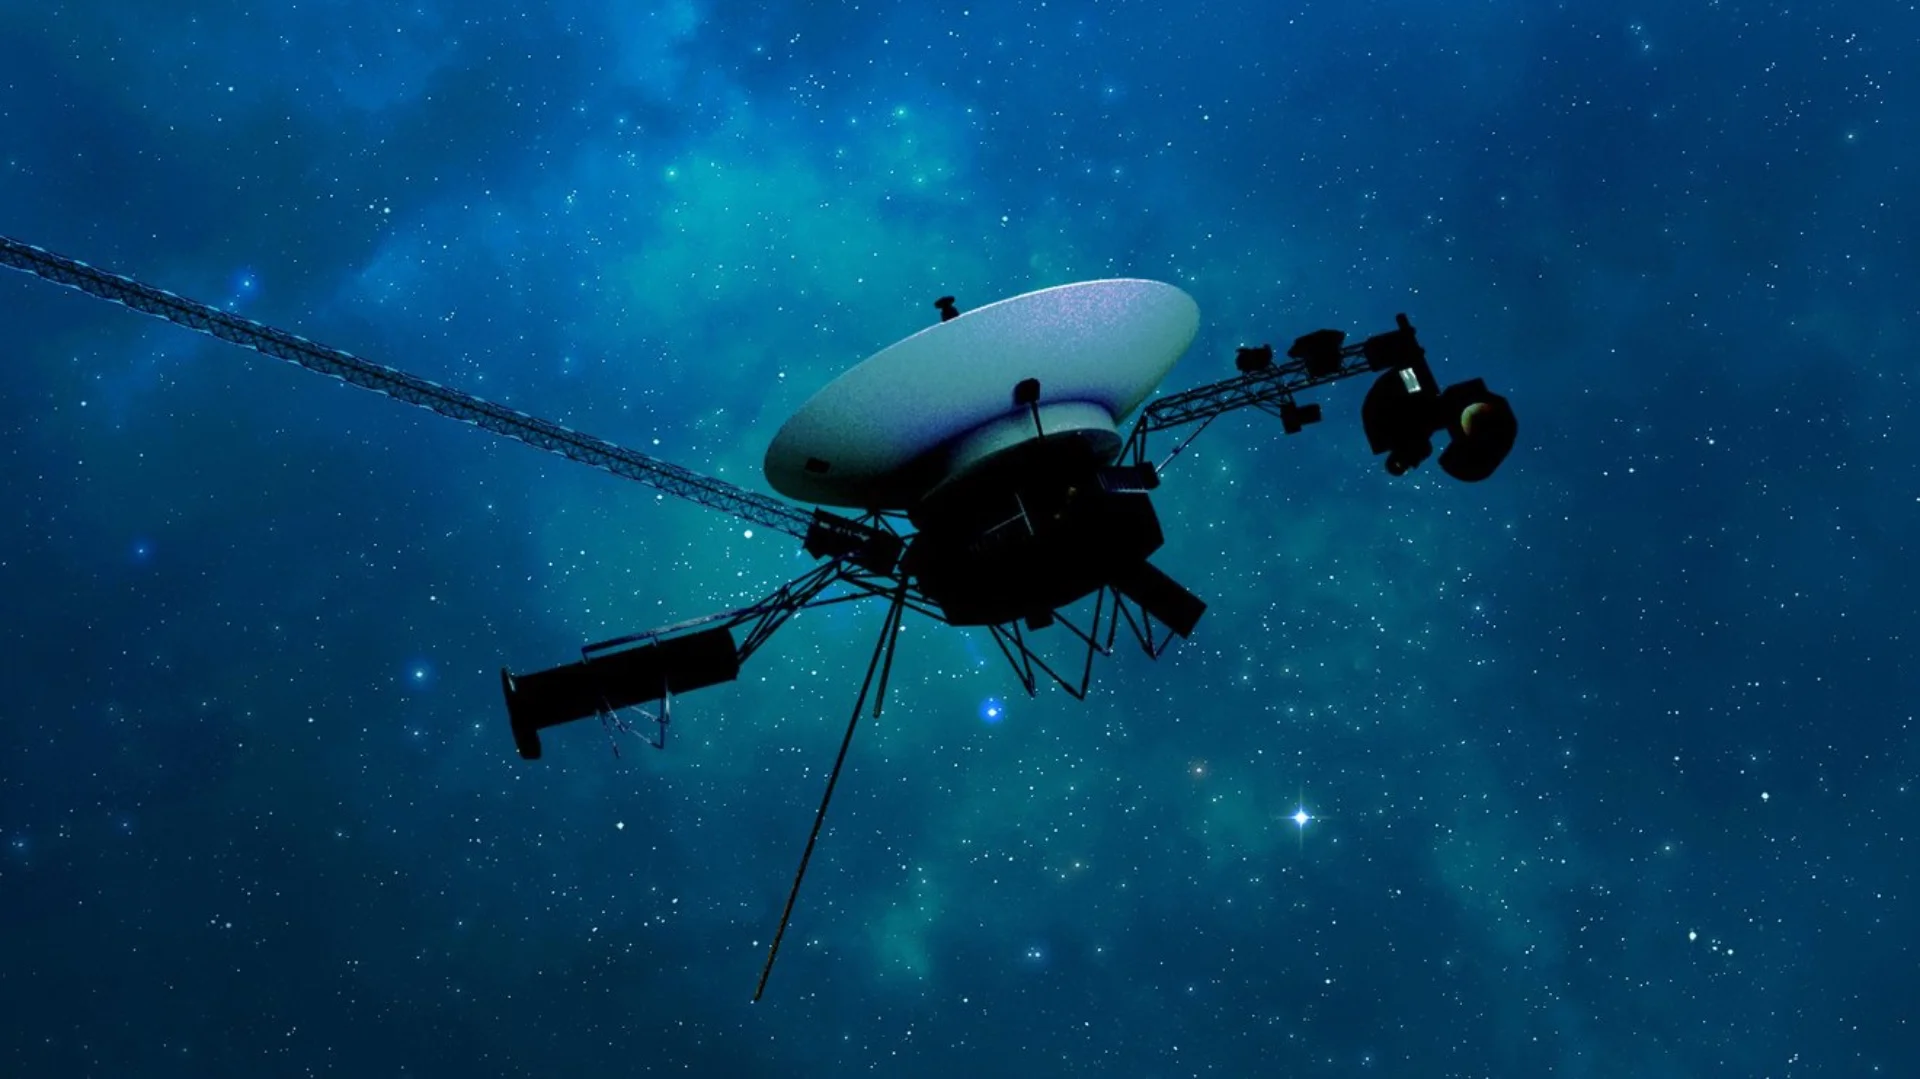 La sonde Voyager 1 de la NASA transmet à nouveau des données \o/